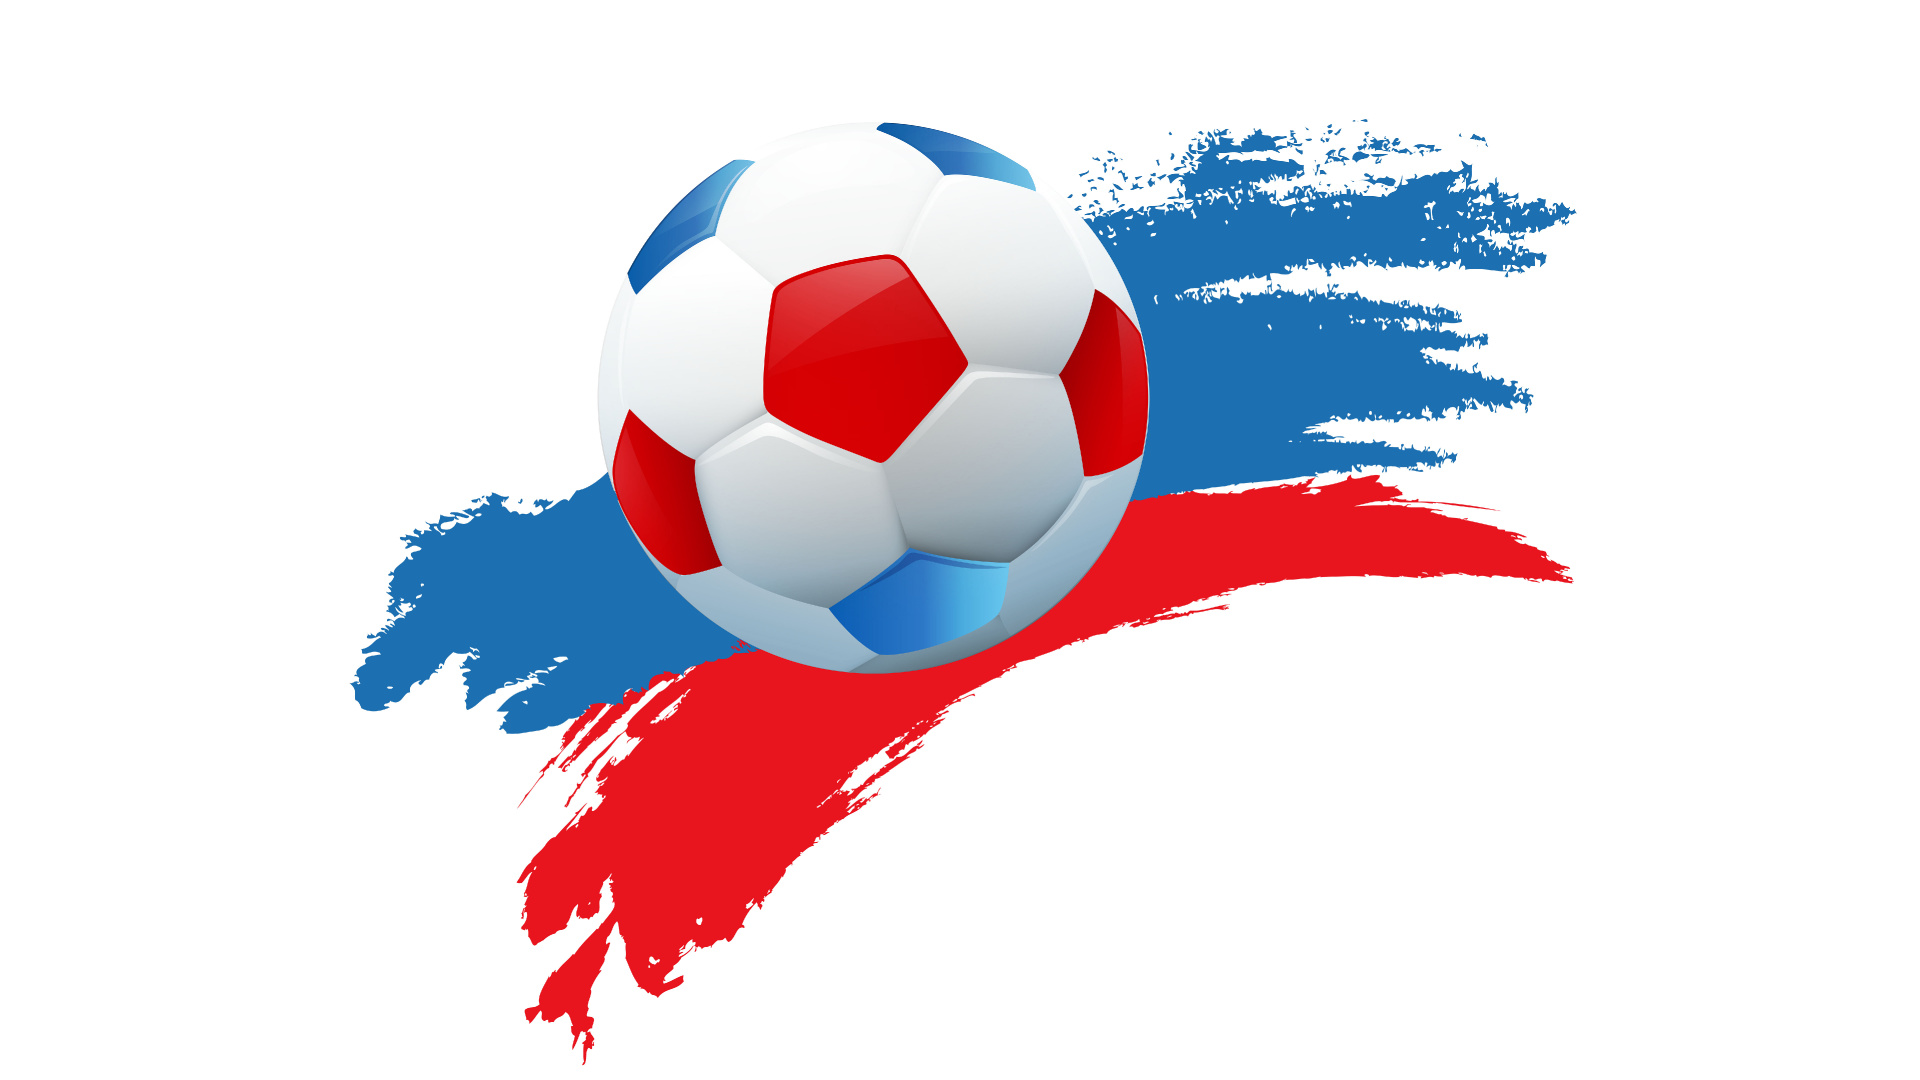 2018年世界杯, 球, 国际足联, 足球, 体育设备 壁纸 1920x1080 允许